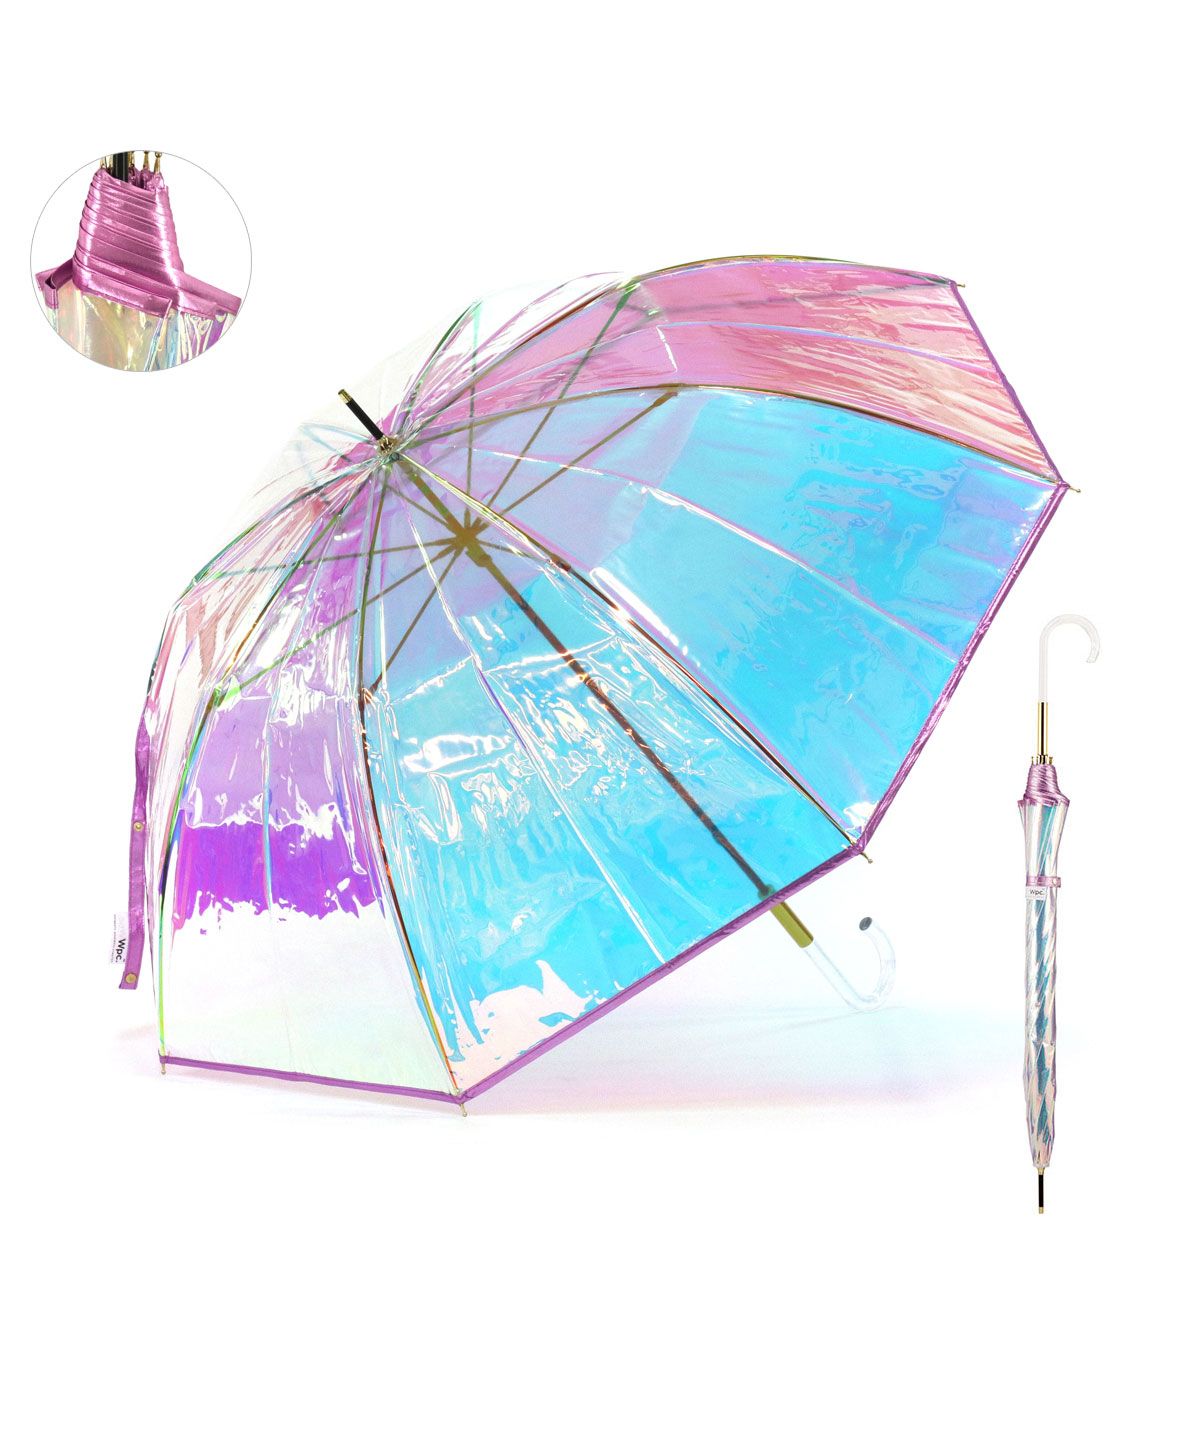 Wpc. ビニール傘 Wpc 長傘 ダブリュピーシー ワールドパーティー PIPING SHINY UMBRELLA 傘 雨傘 オーロラ傘 60cm  カサ かさ(504715298) | ダブリュピーシー(Wpc.) - d fashion